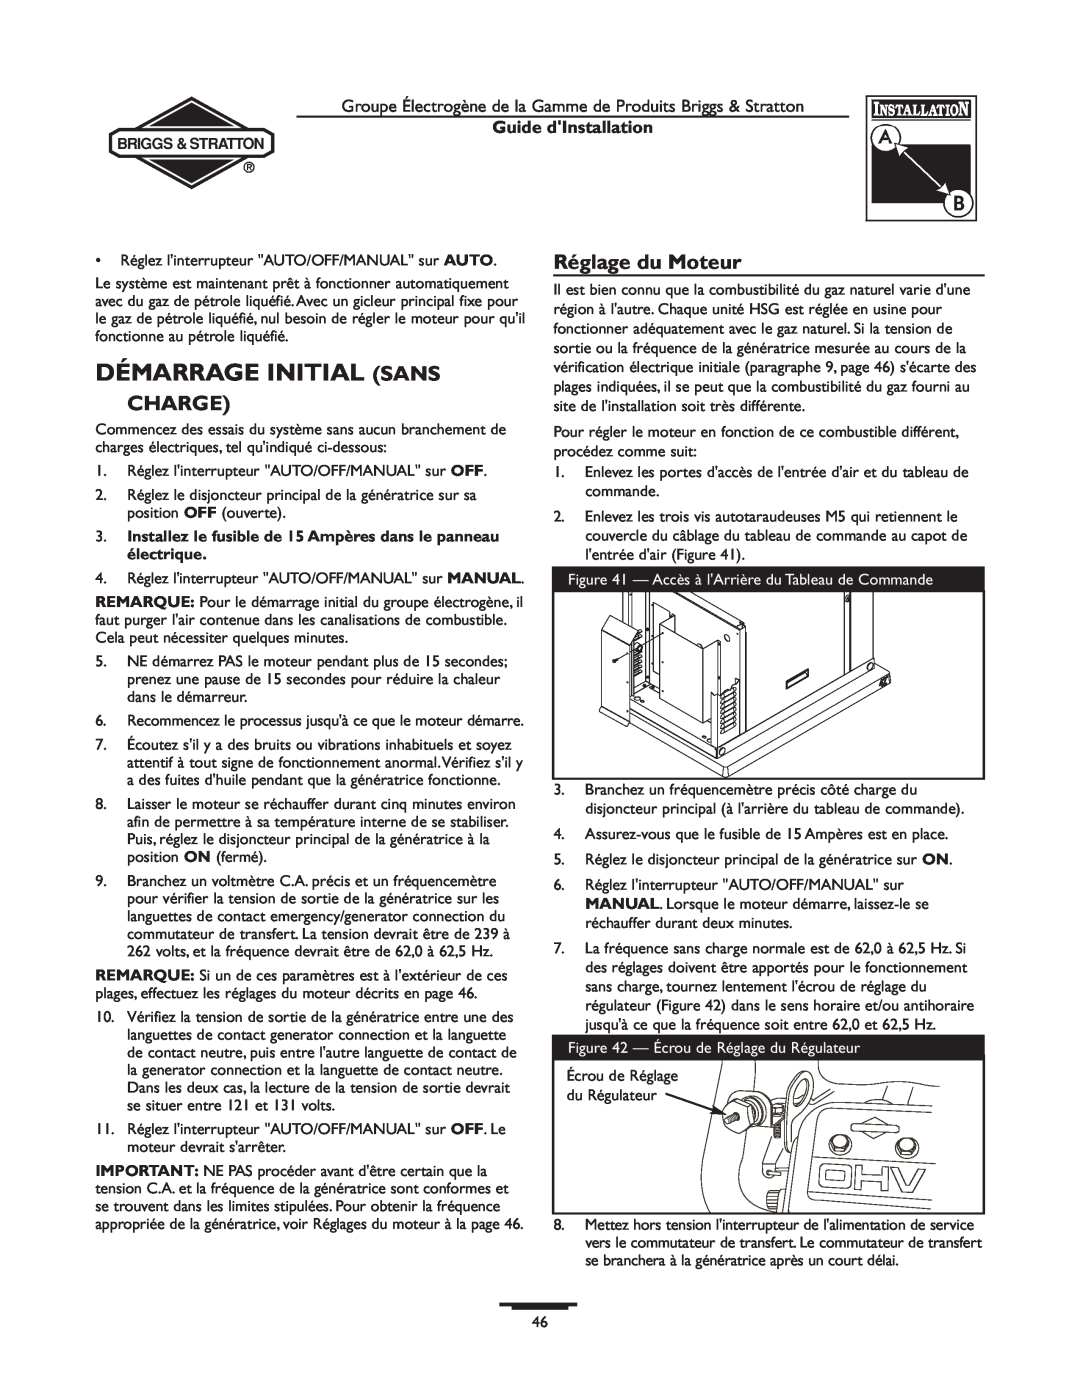 Briggs & Stratton 01938-0, 01815-0 manual Démarrage Initial Sans, Charge, Réglage du Moteur, Guide dInstallation 